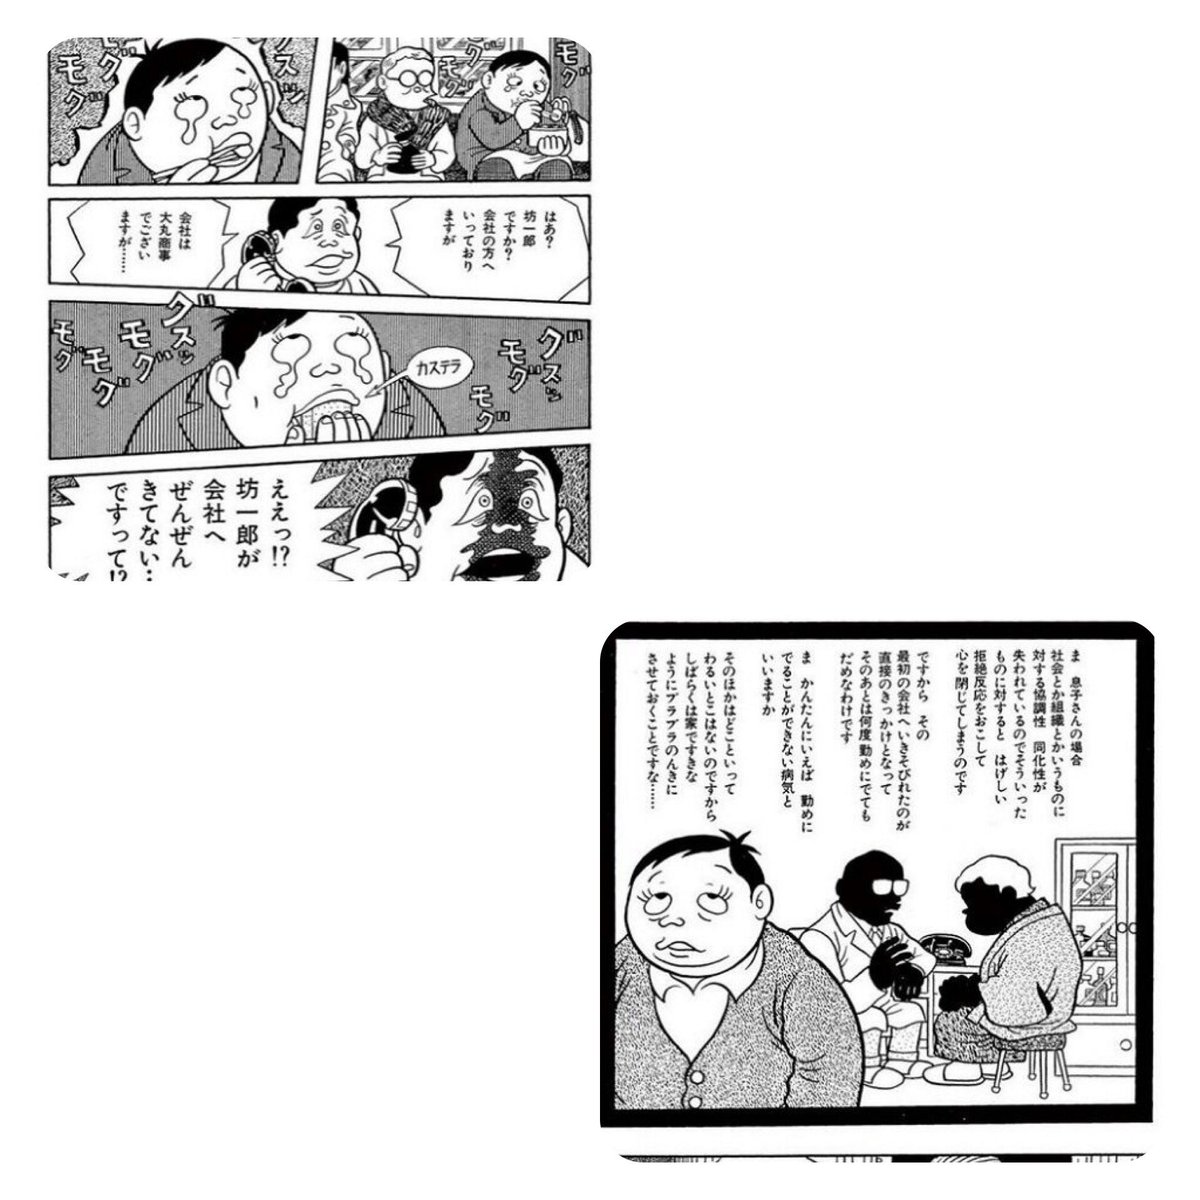 漫画家の藤子不二雄Aさんが自宅で死去(88歳)

藤子A先生の好きな作品は色々あるけど、18ページの短編は1971年に描いた作品とは思えないほど現代的なブラックユーモアが詰まっていて大好きでした。ご冥福をお祈りします。 